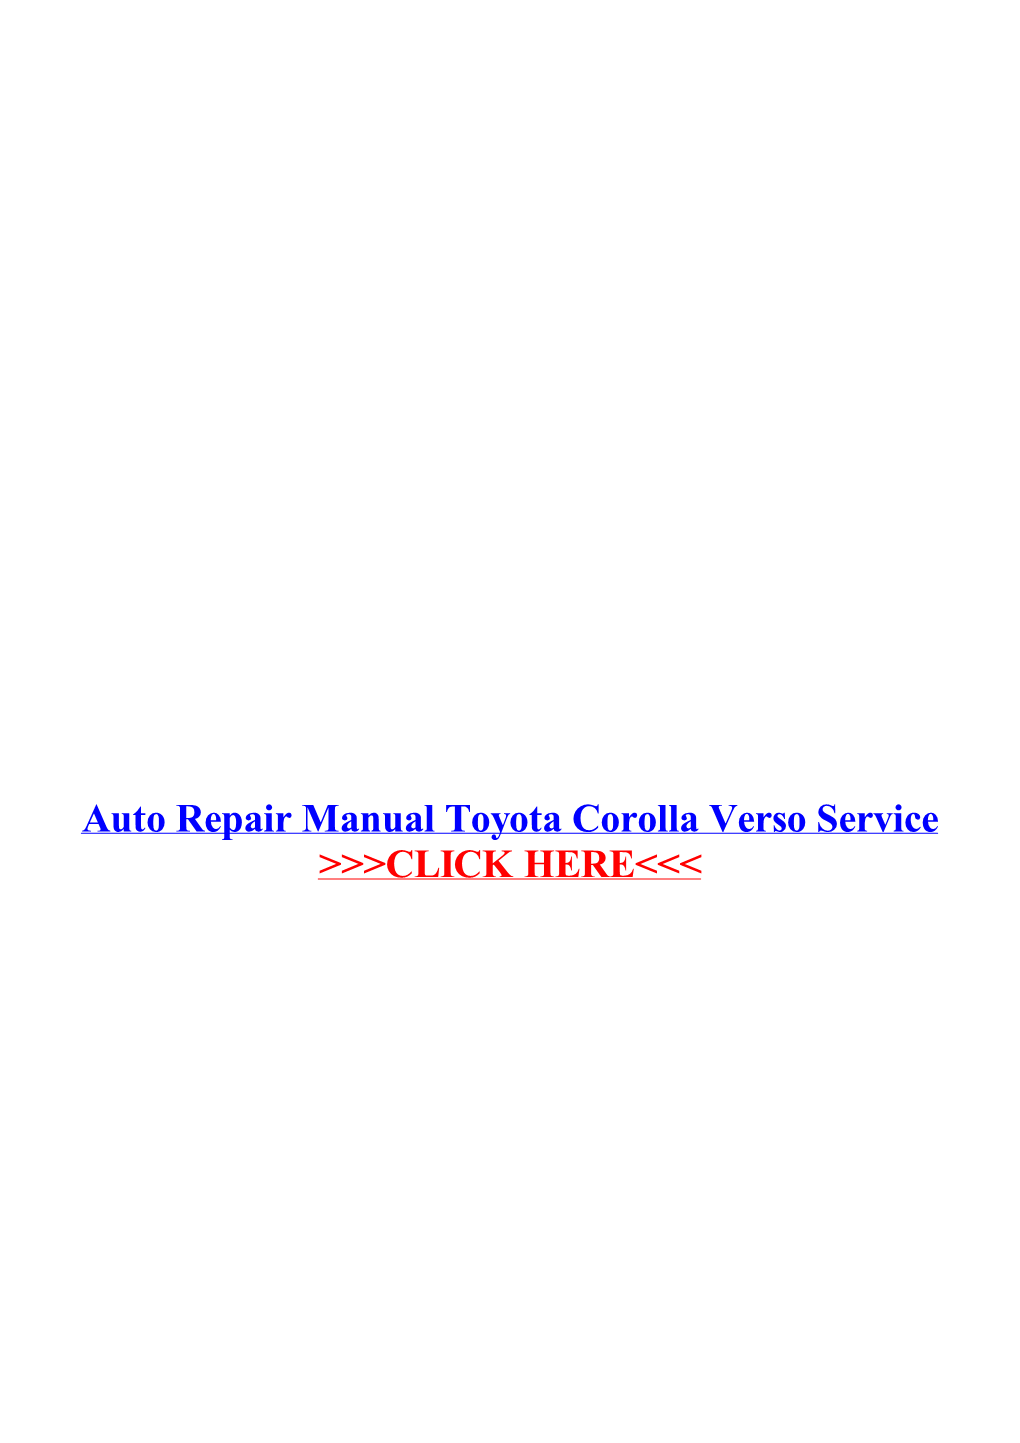 Auto Repair Manual Toyota Corolla Verso Service.Pdf